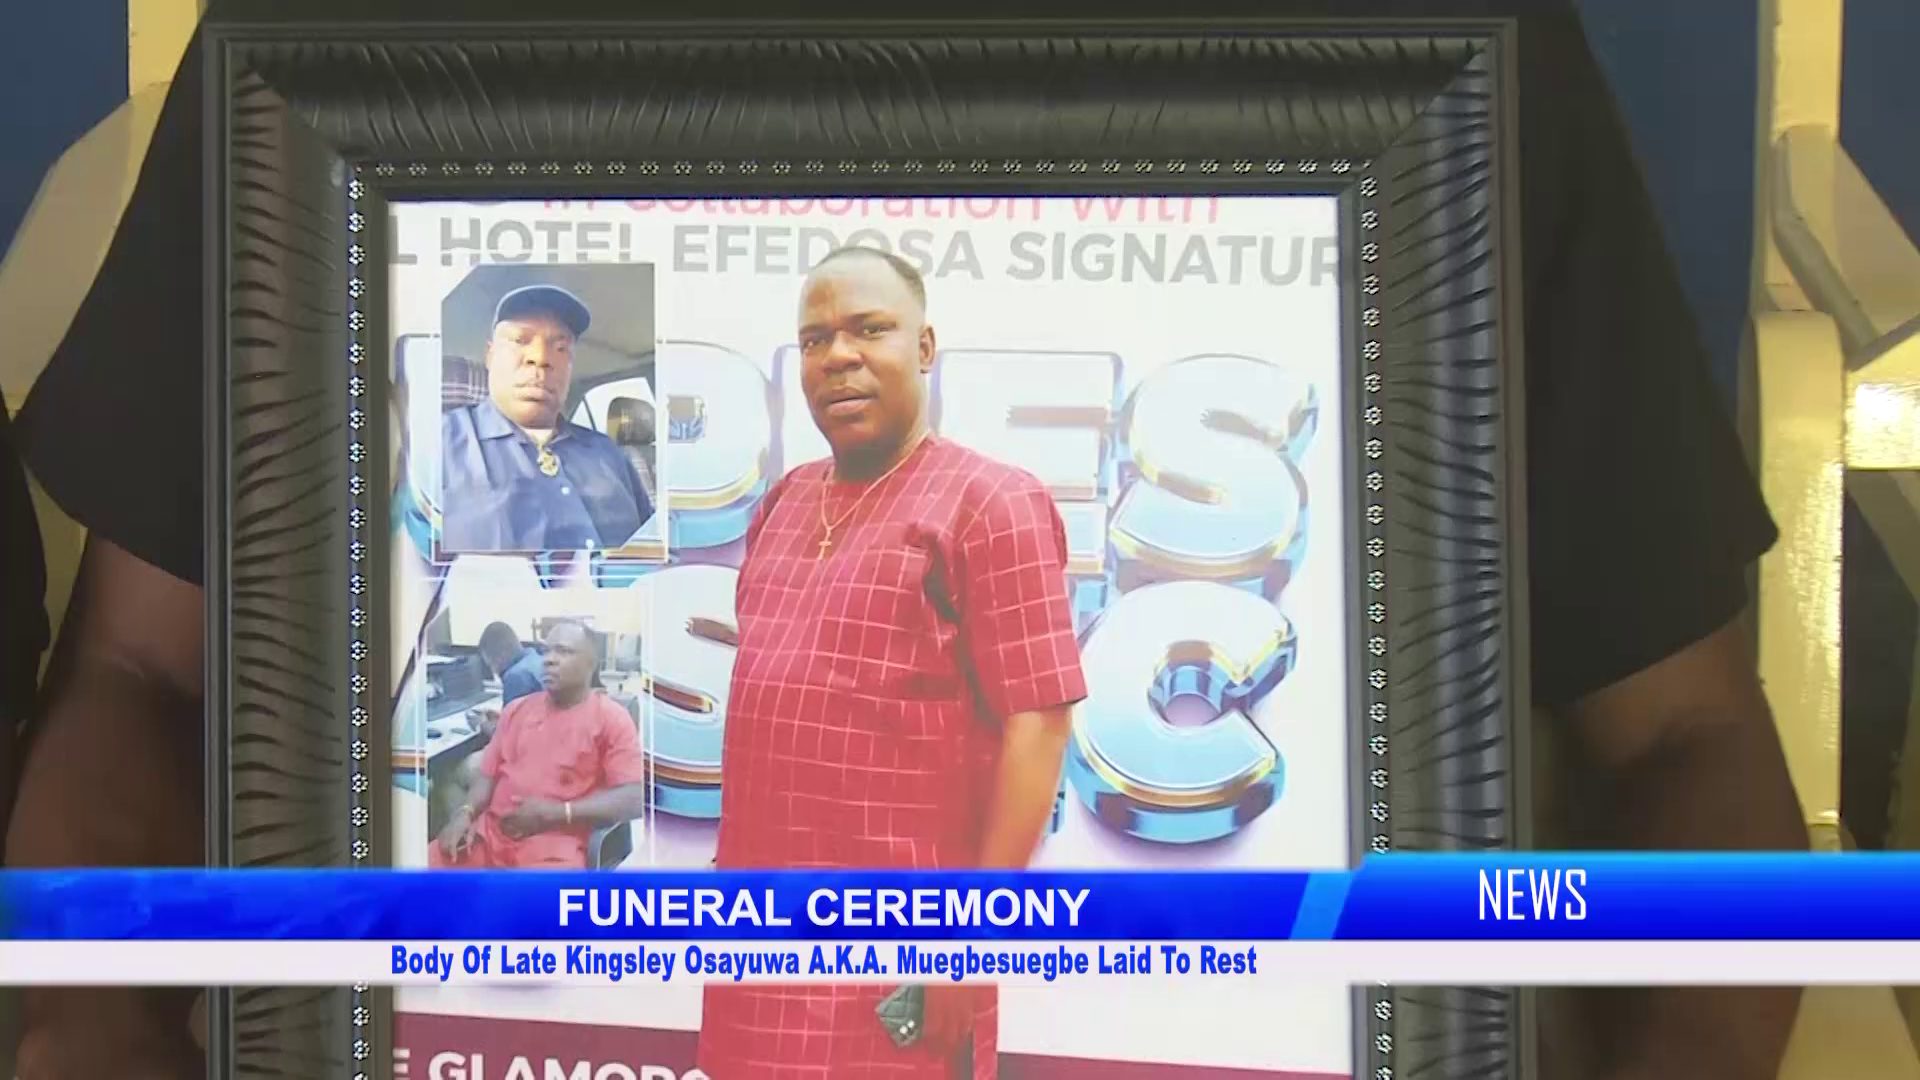 Body Of Late Kingsley Osayuwa A.K.A. Muegbesuegbe Laid To Rest